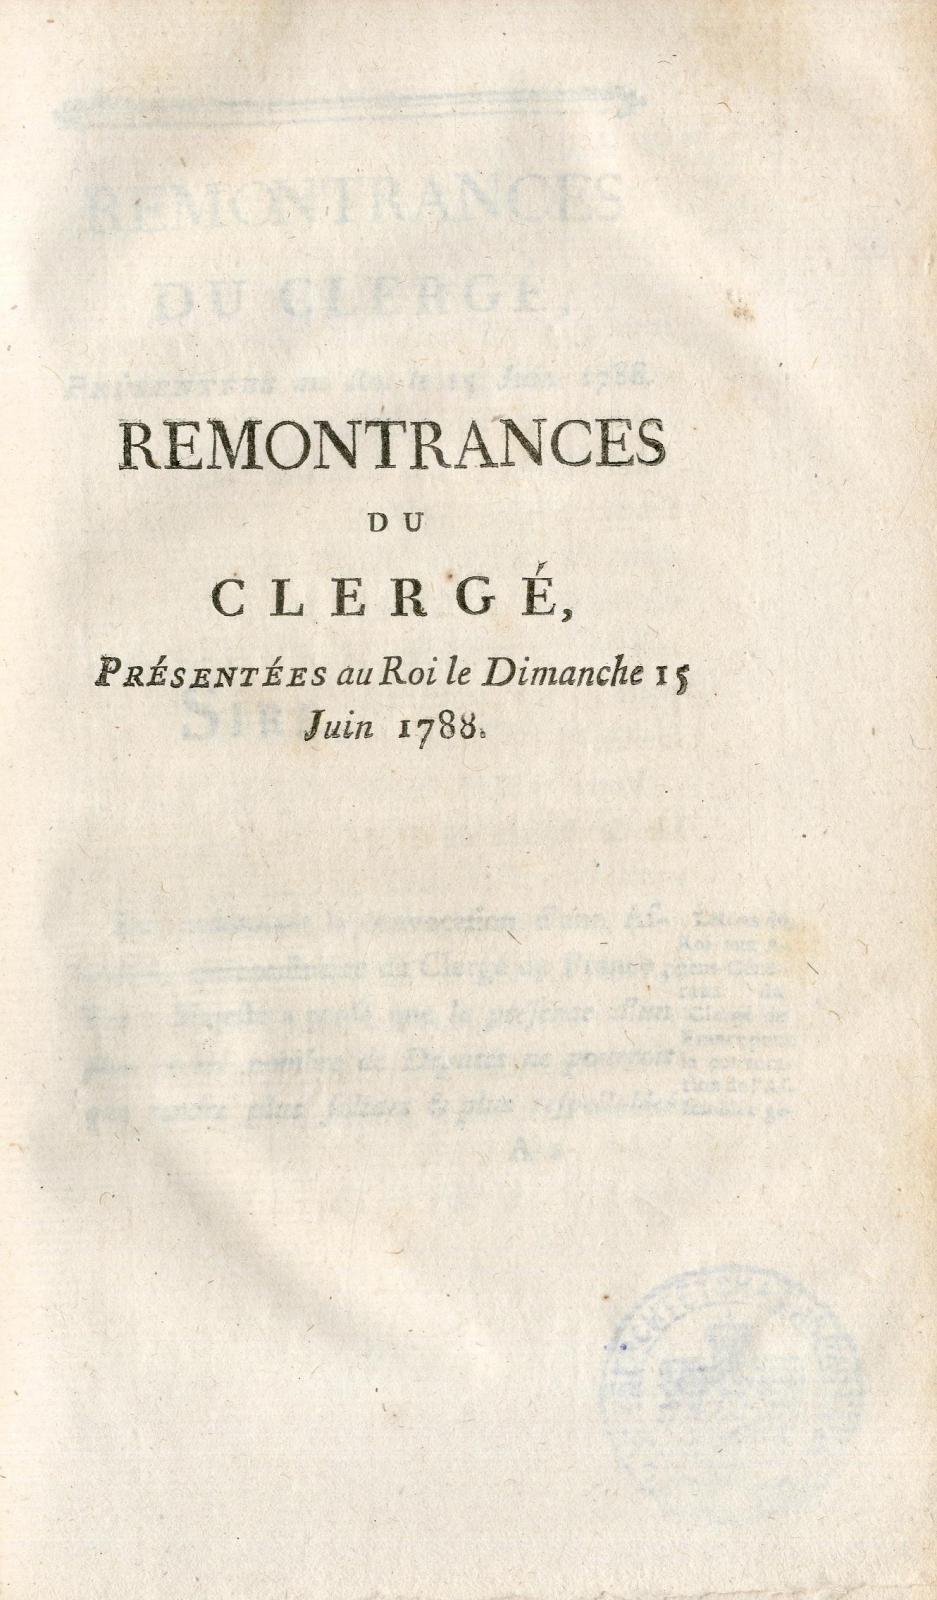 Remontrances du clergé, présentées au Roi le dimanche 15 juin 1788